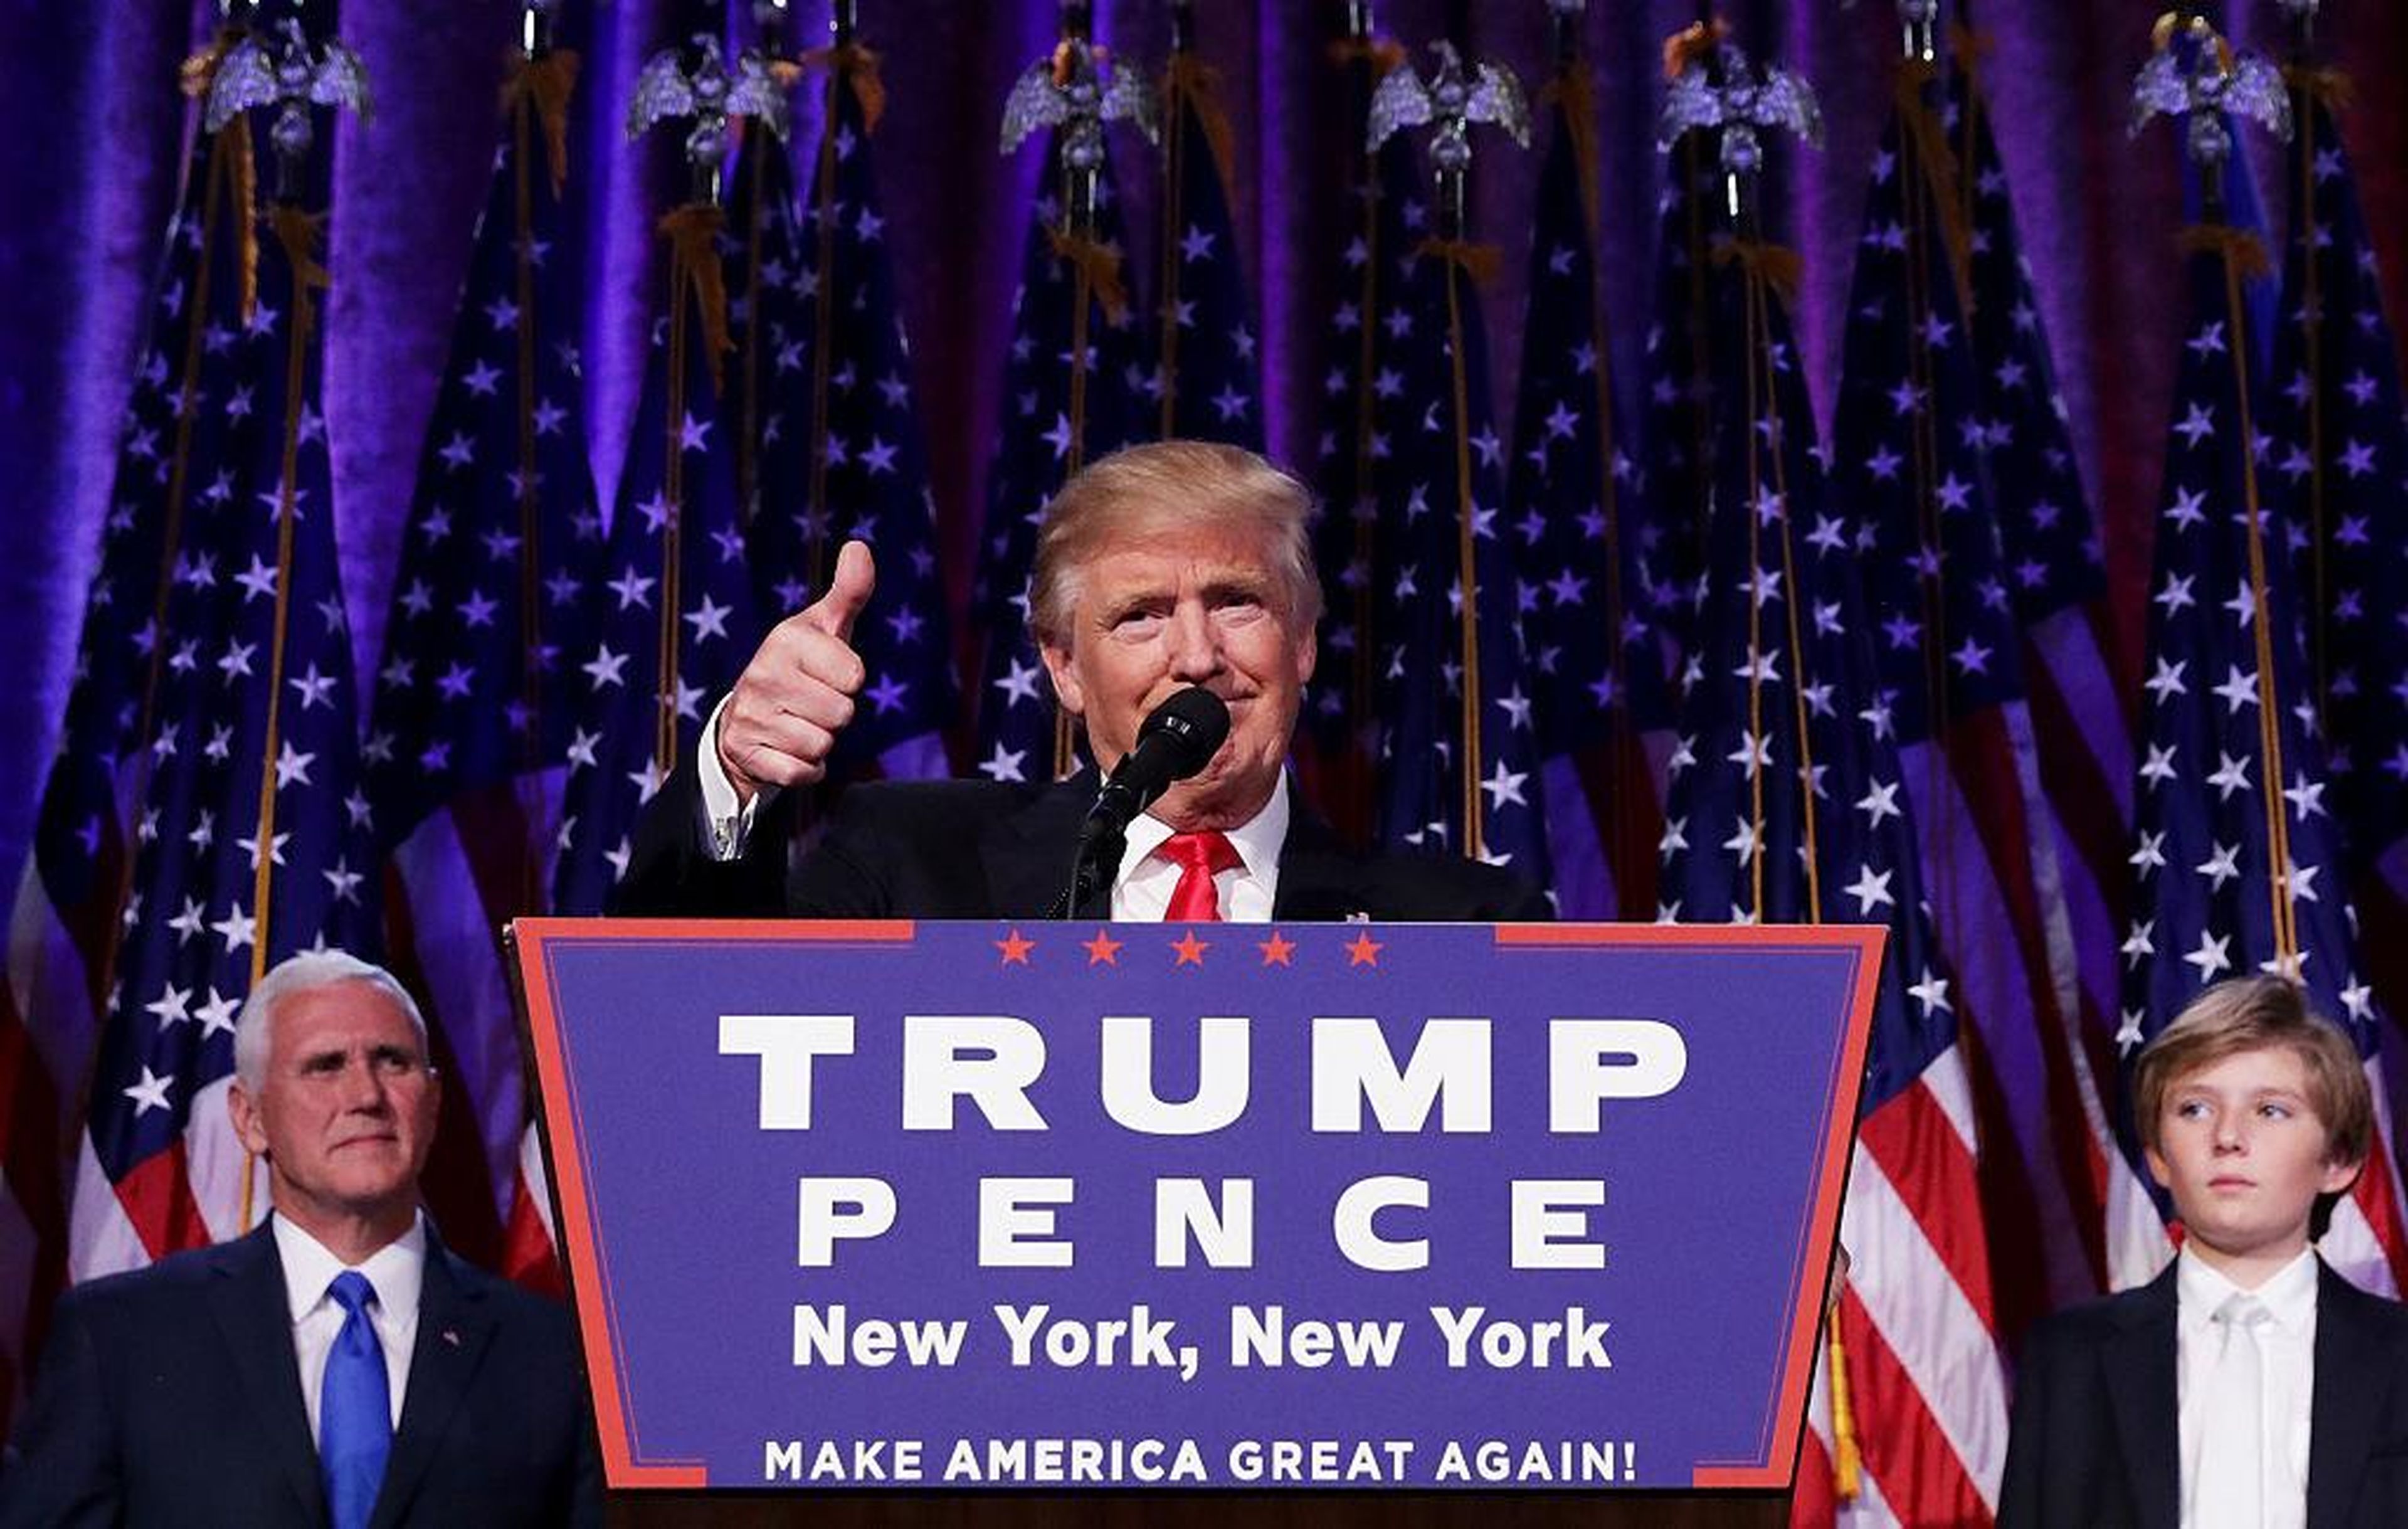 El presidente electo republicano, Donald Trump da su discurso de aceptación en la noche electoral del 9 de noviembre de 2016